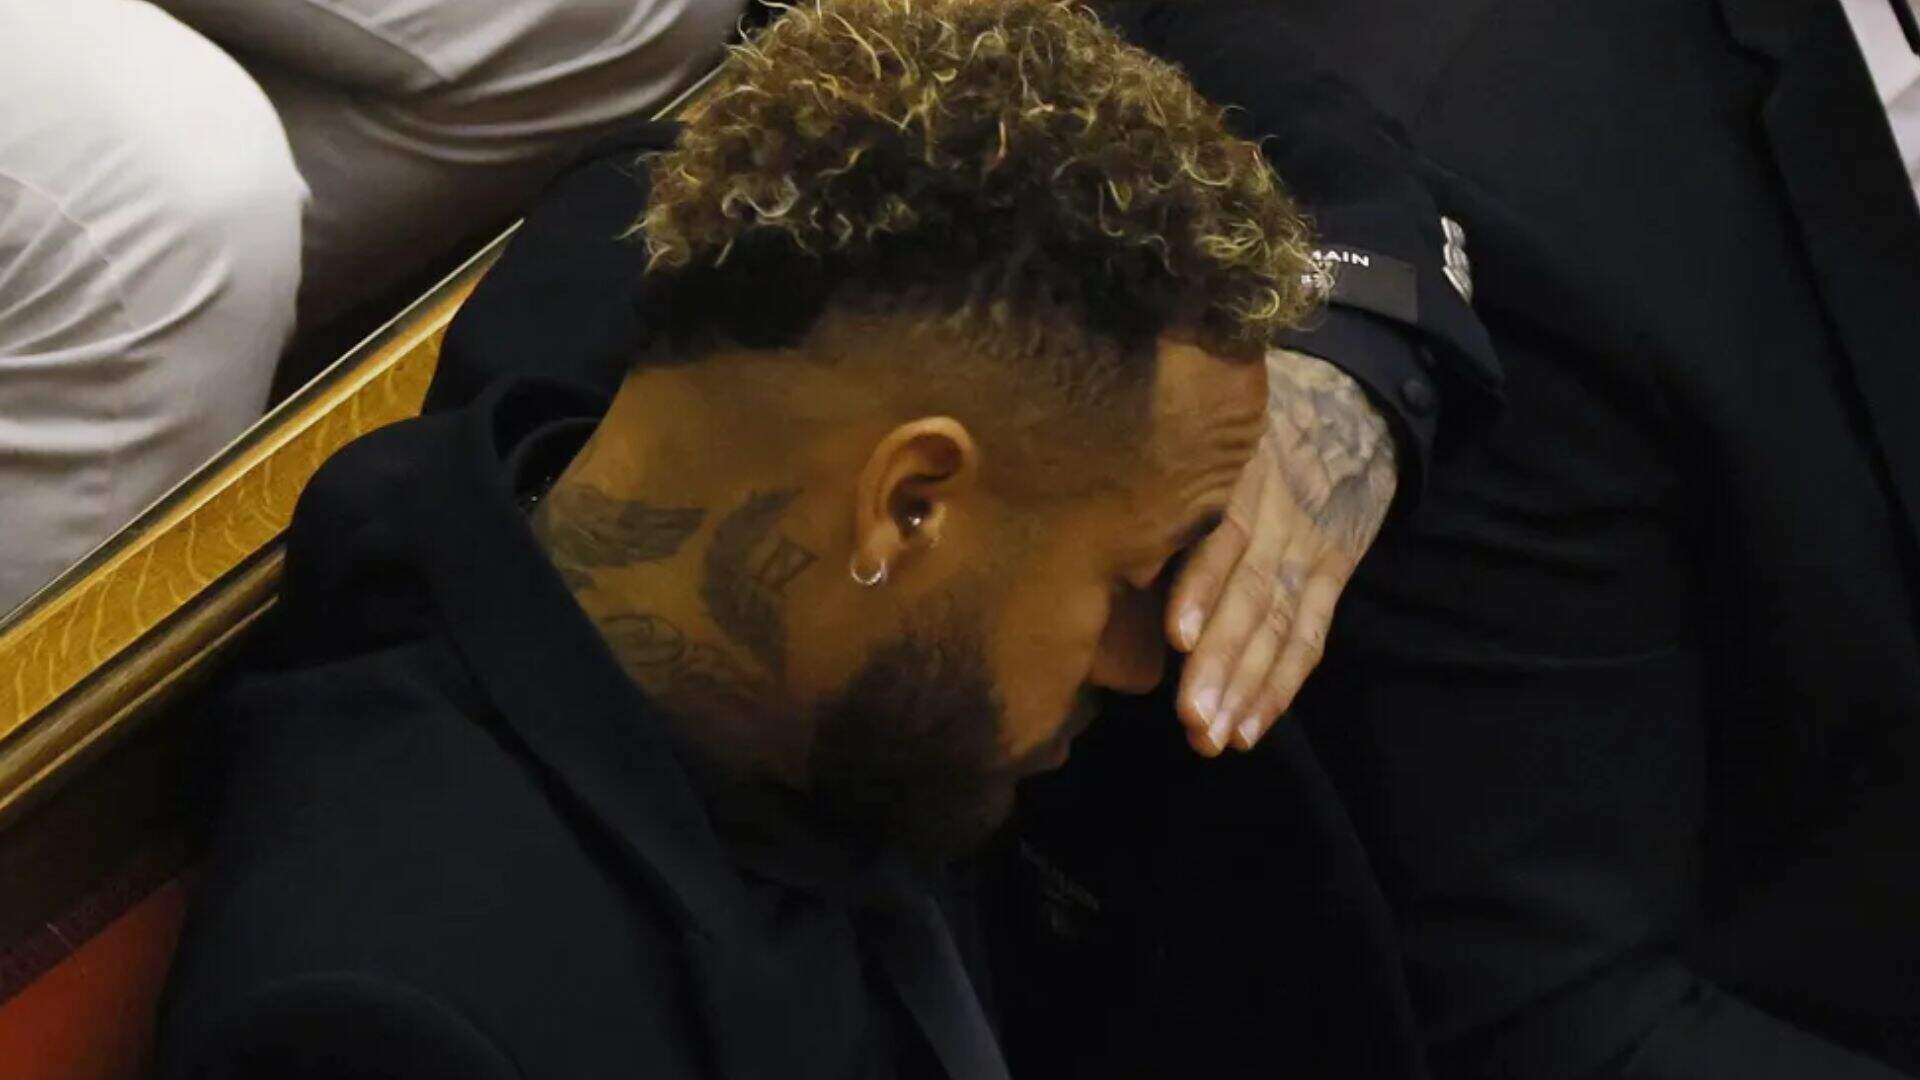 Culpa do pai? Após julgamento polêmico, Neymar Jr explica o que aconteceu: “Sempre cuidou”